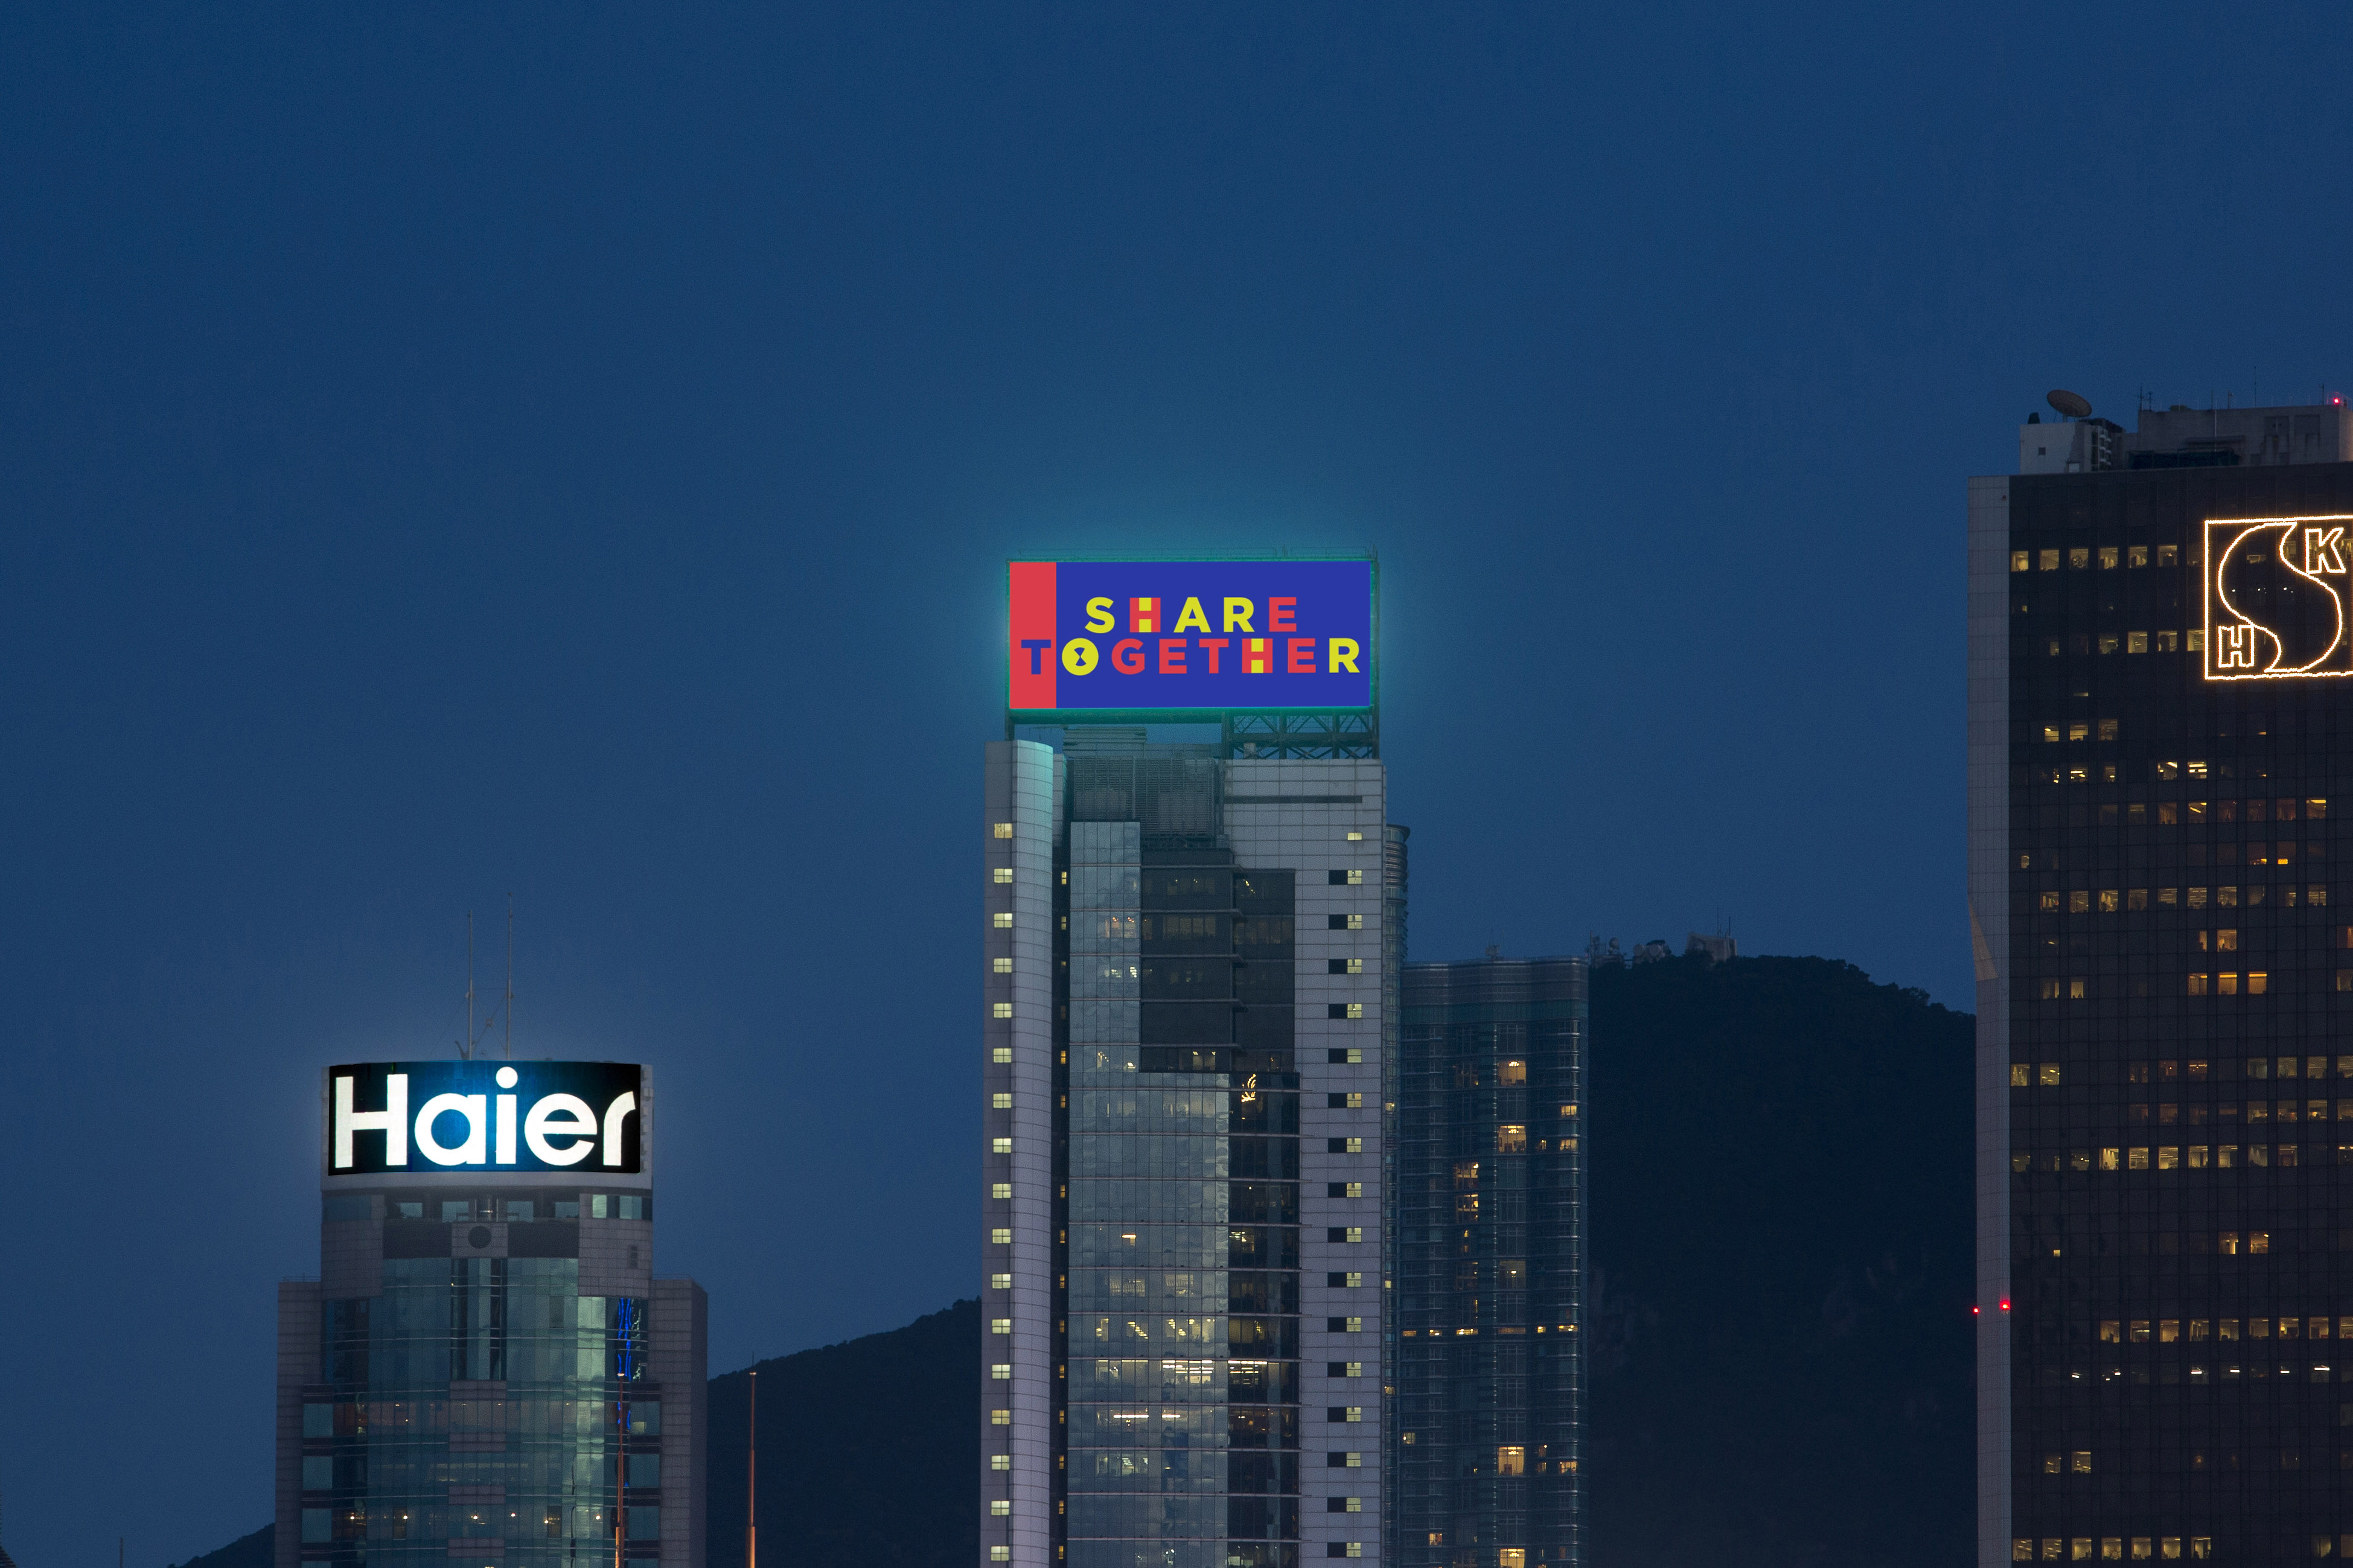 中国人寿(海外)参加新版「幻彩咏香江」汇演，与维港两岸40多幢大厦共同播放灯光效果，展示维港充满动感一面